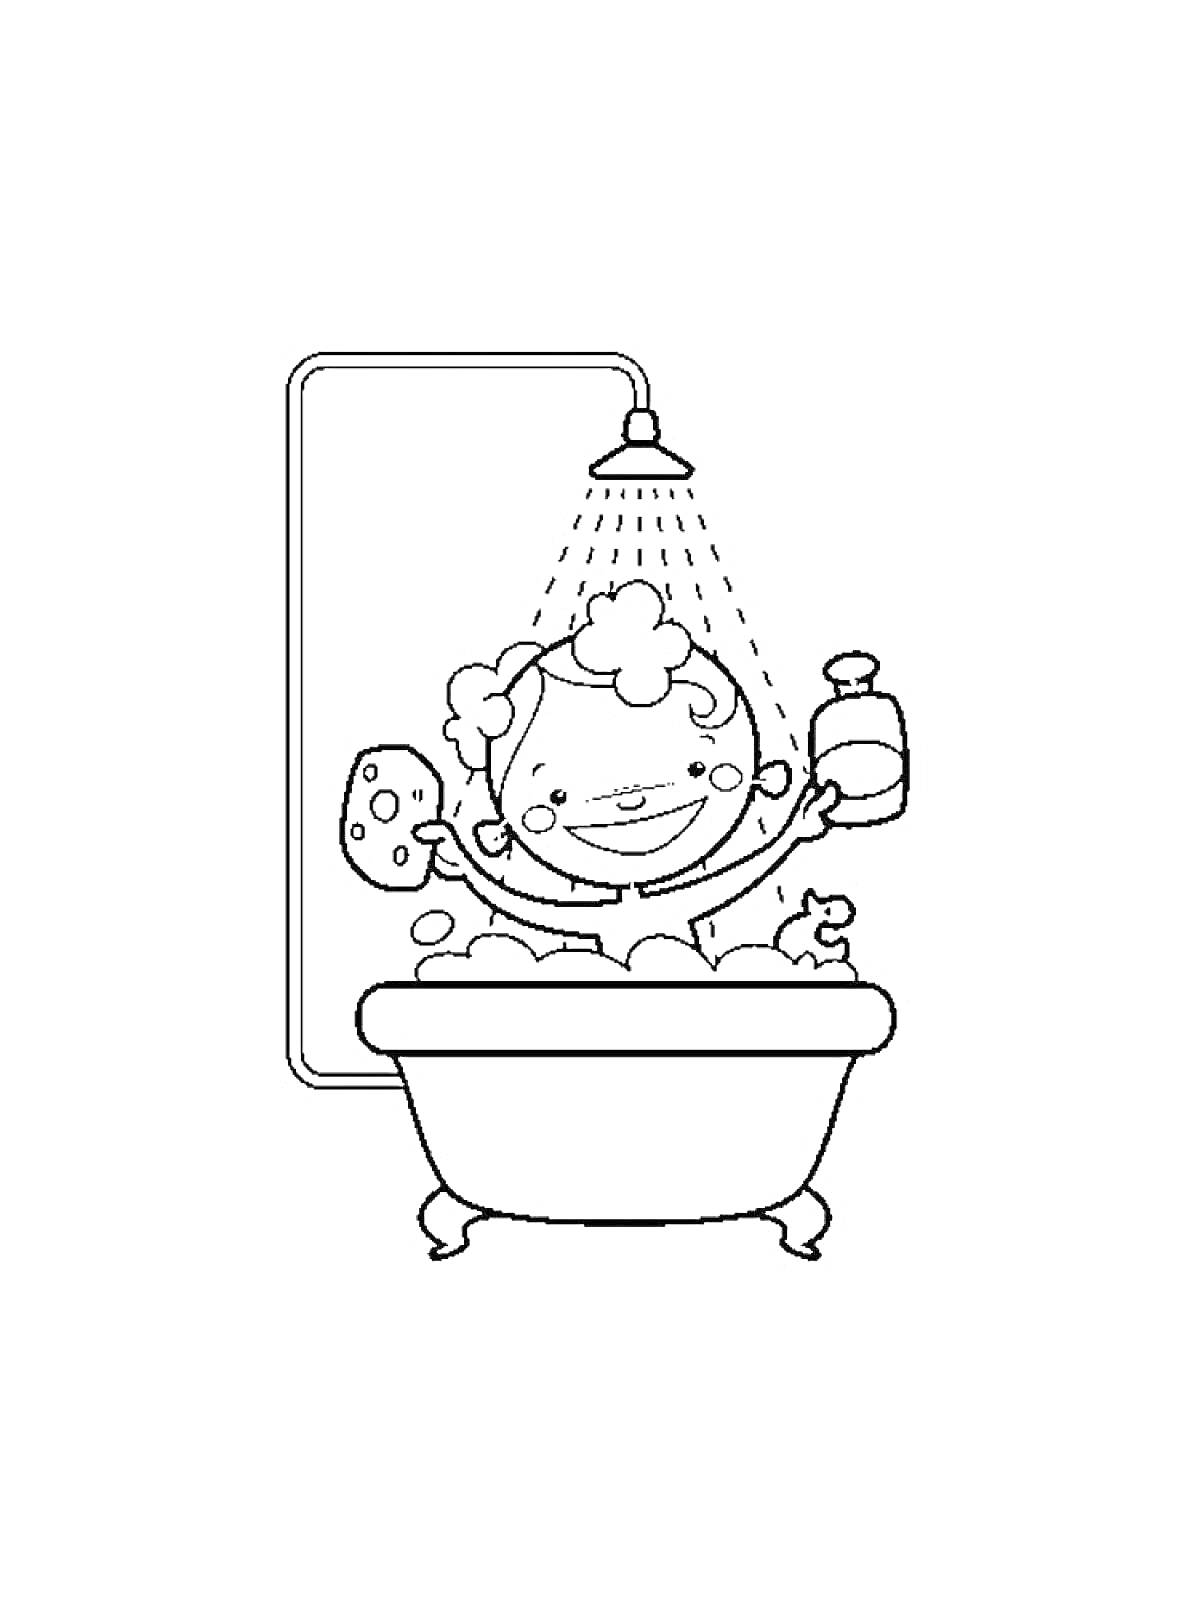 Ребенок в ванне с губкой, мылом и уткой под душем